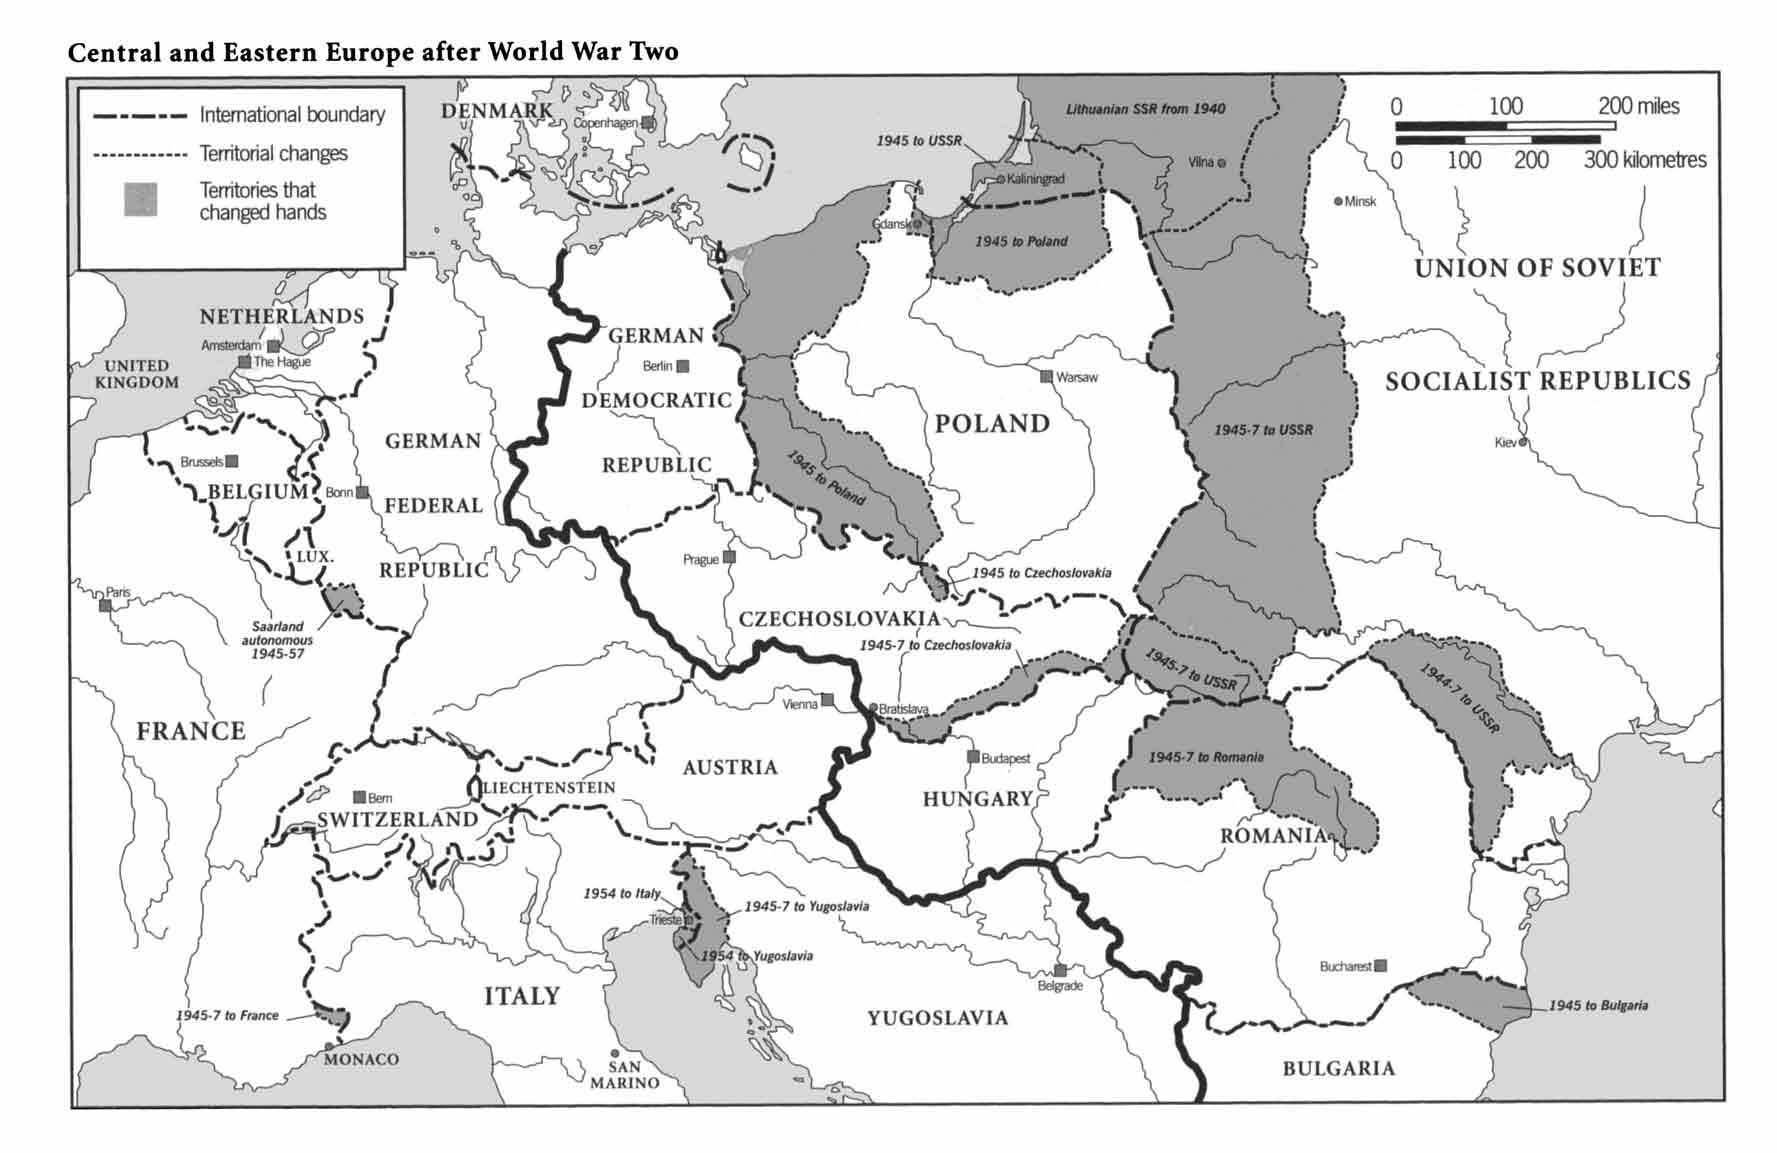 Territori polacchi annessi da Germania e Urss